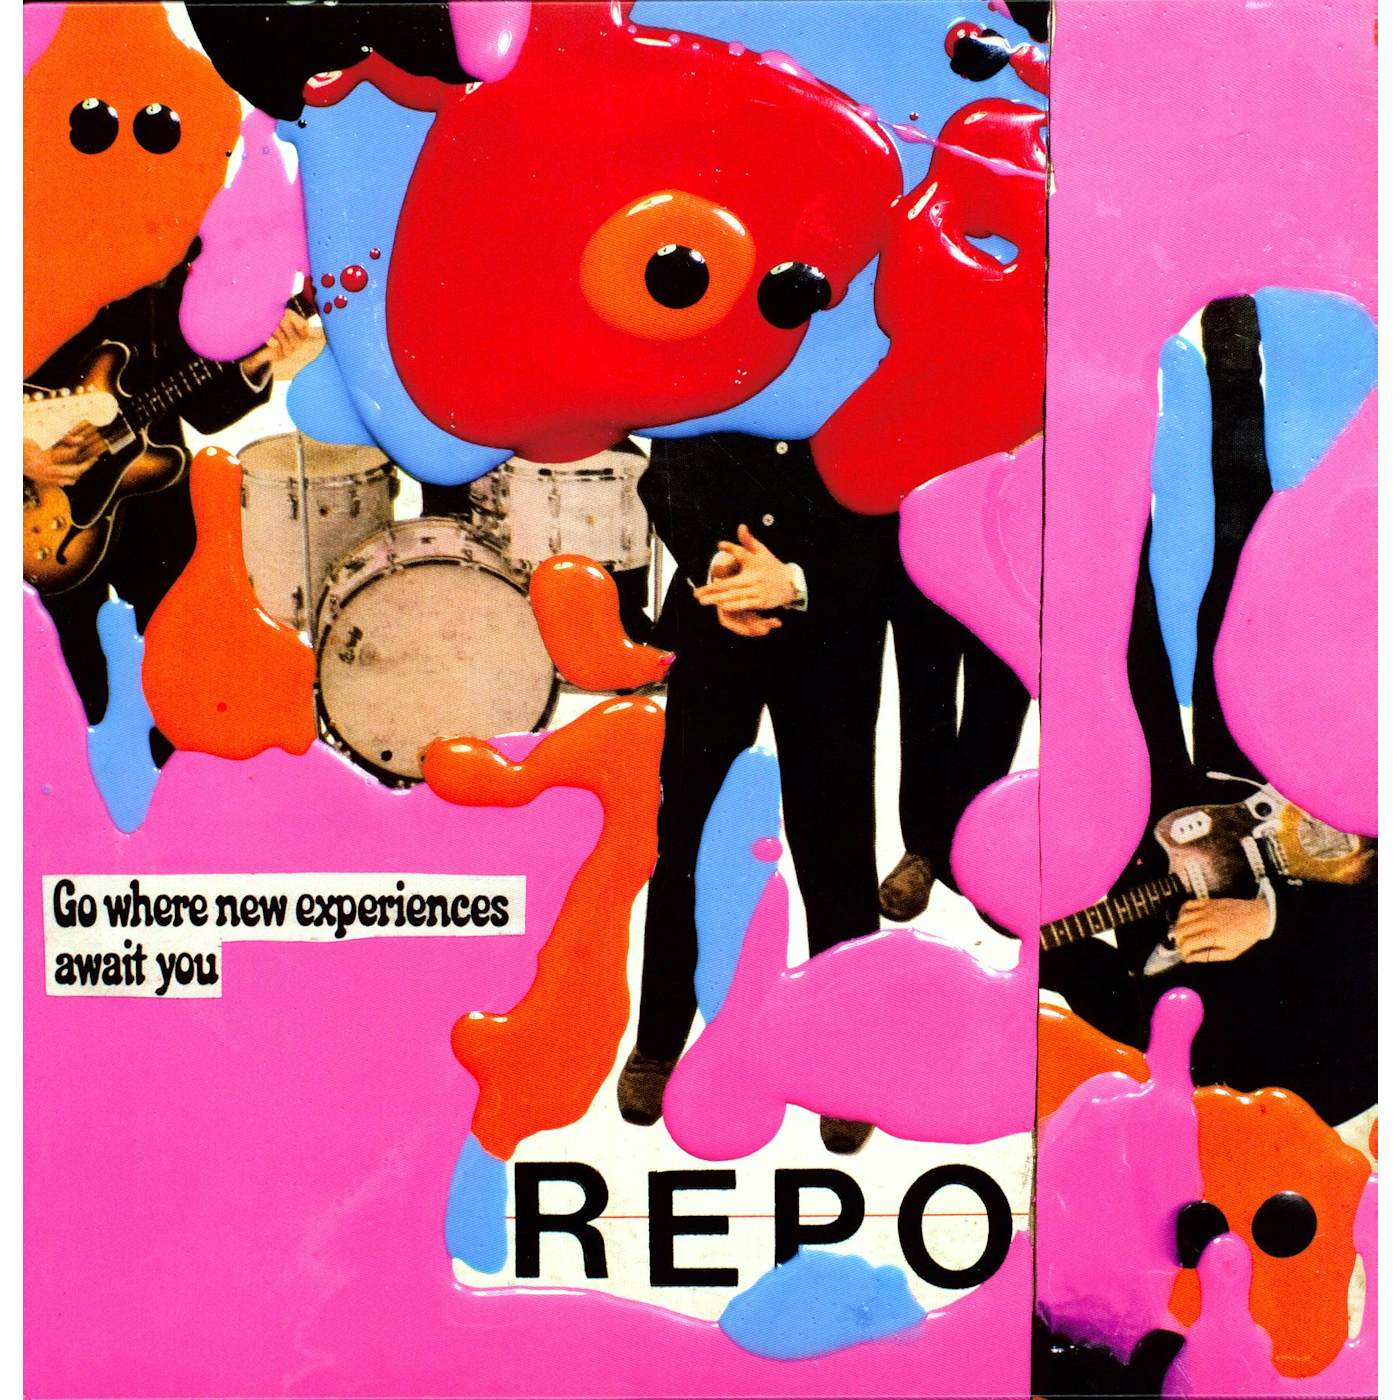 Black Dice Repo Vinyl Record